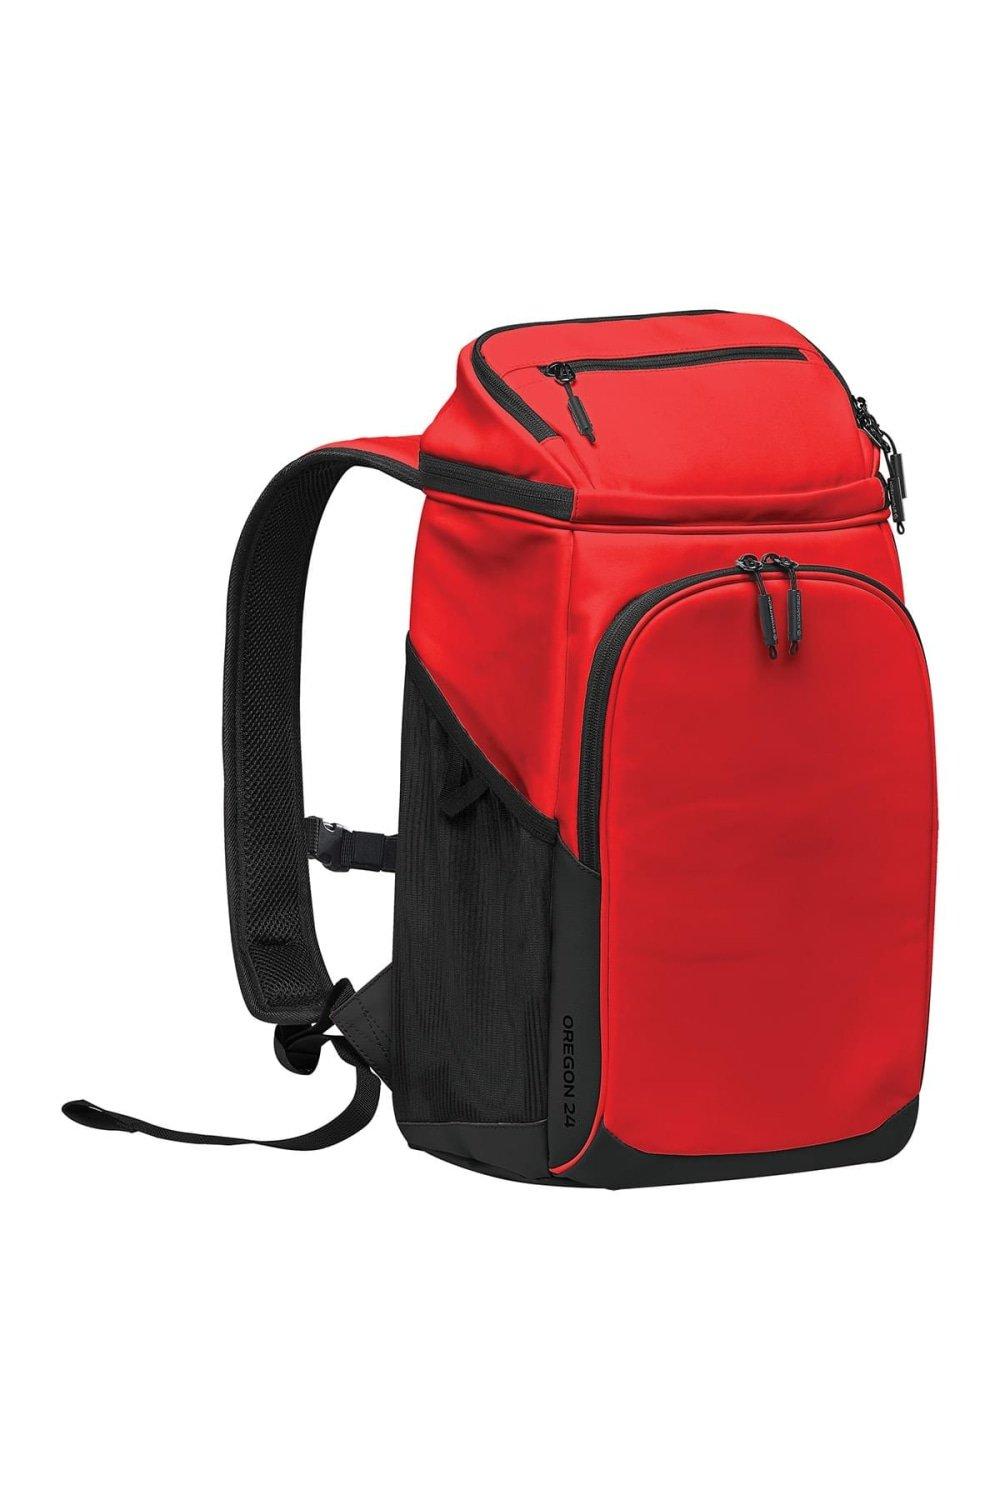 Oregon 24 Cooler Backpack